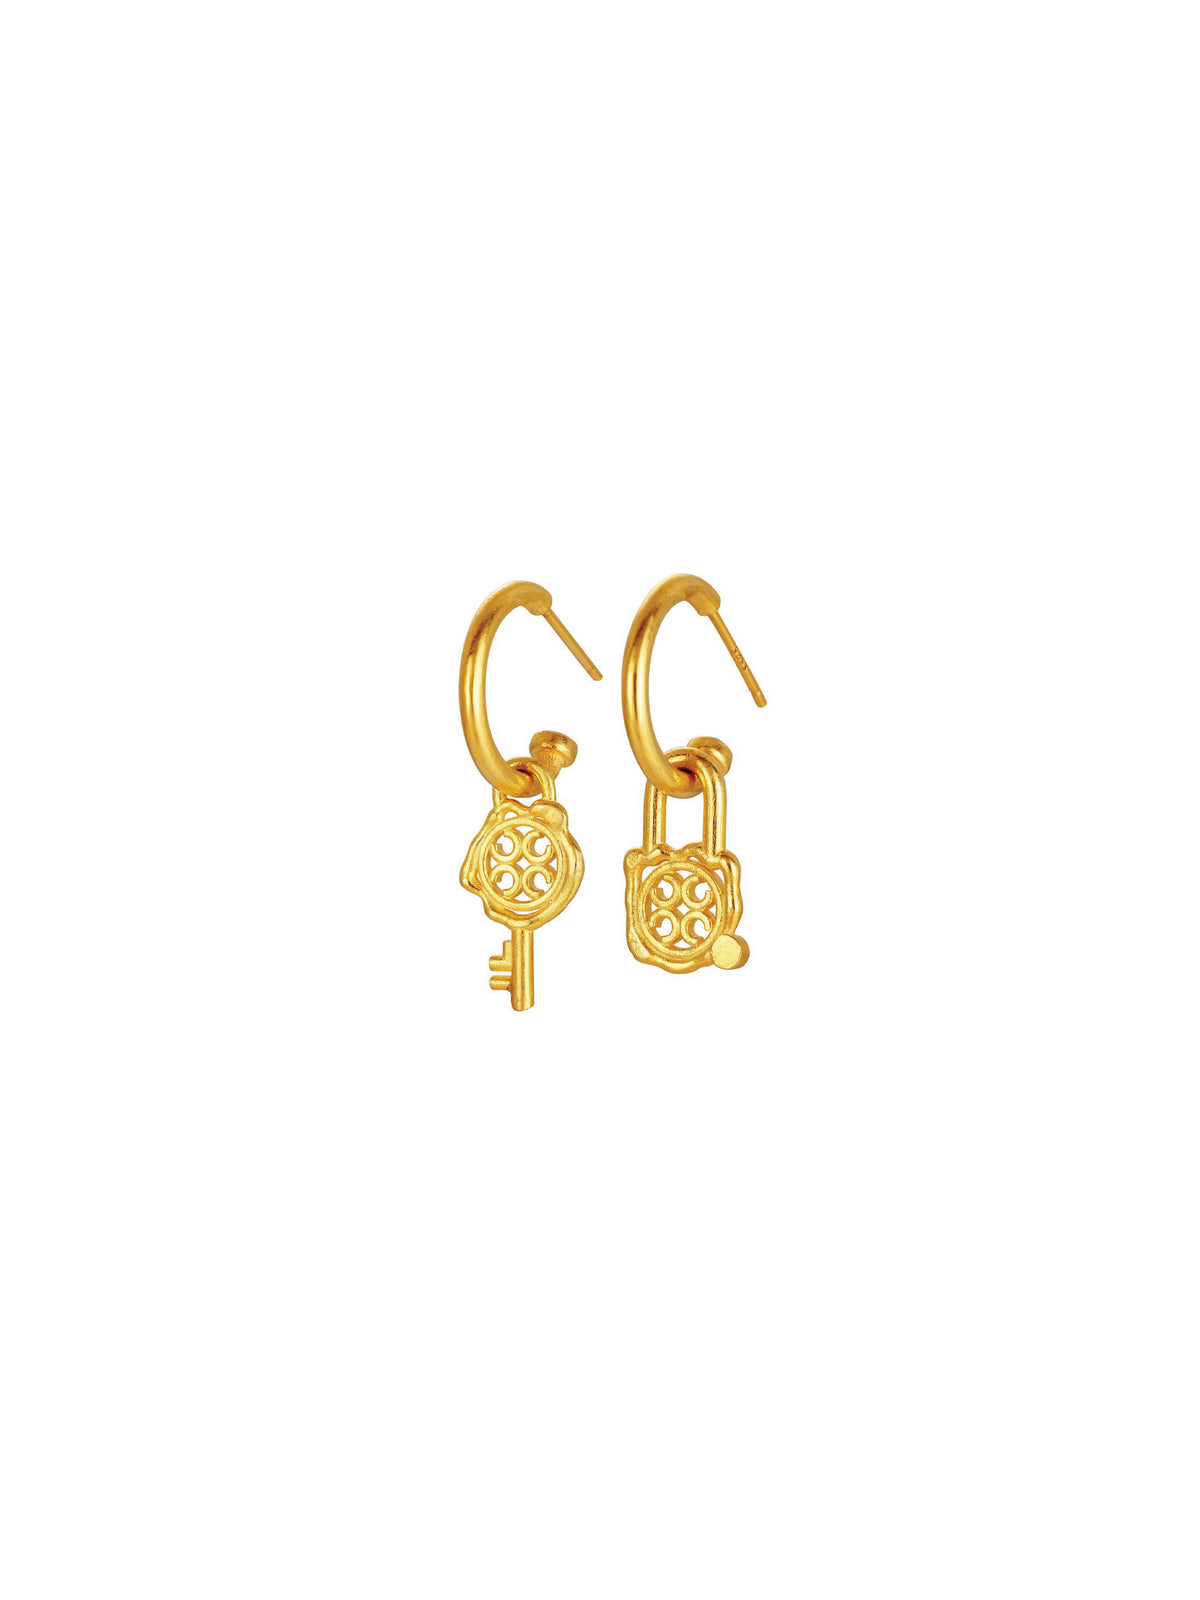 Signature Lock & Key Earrings (Pair)